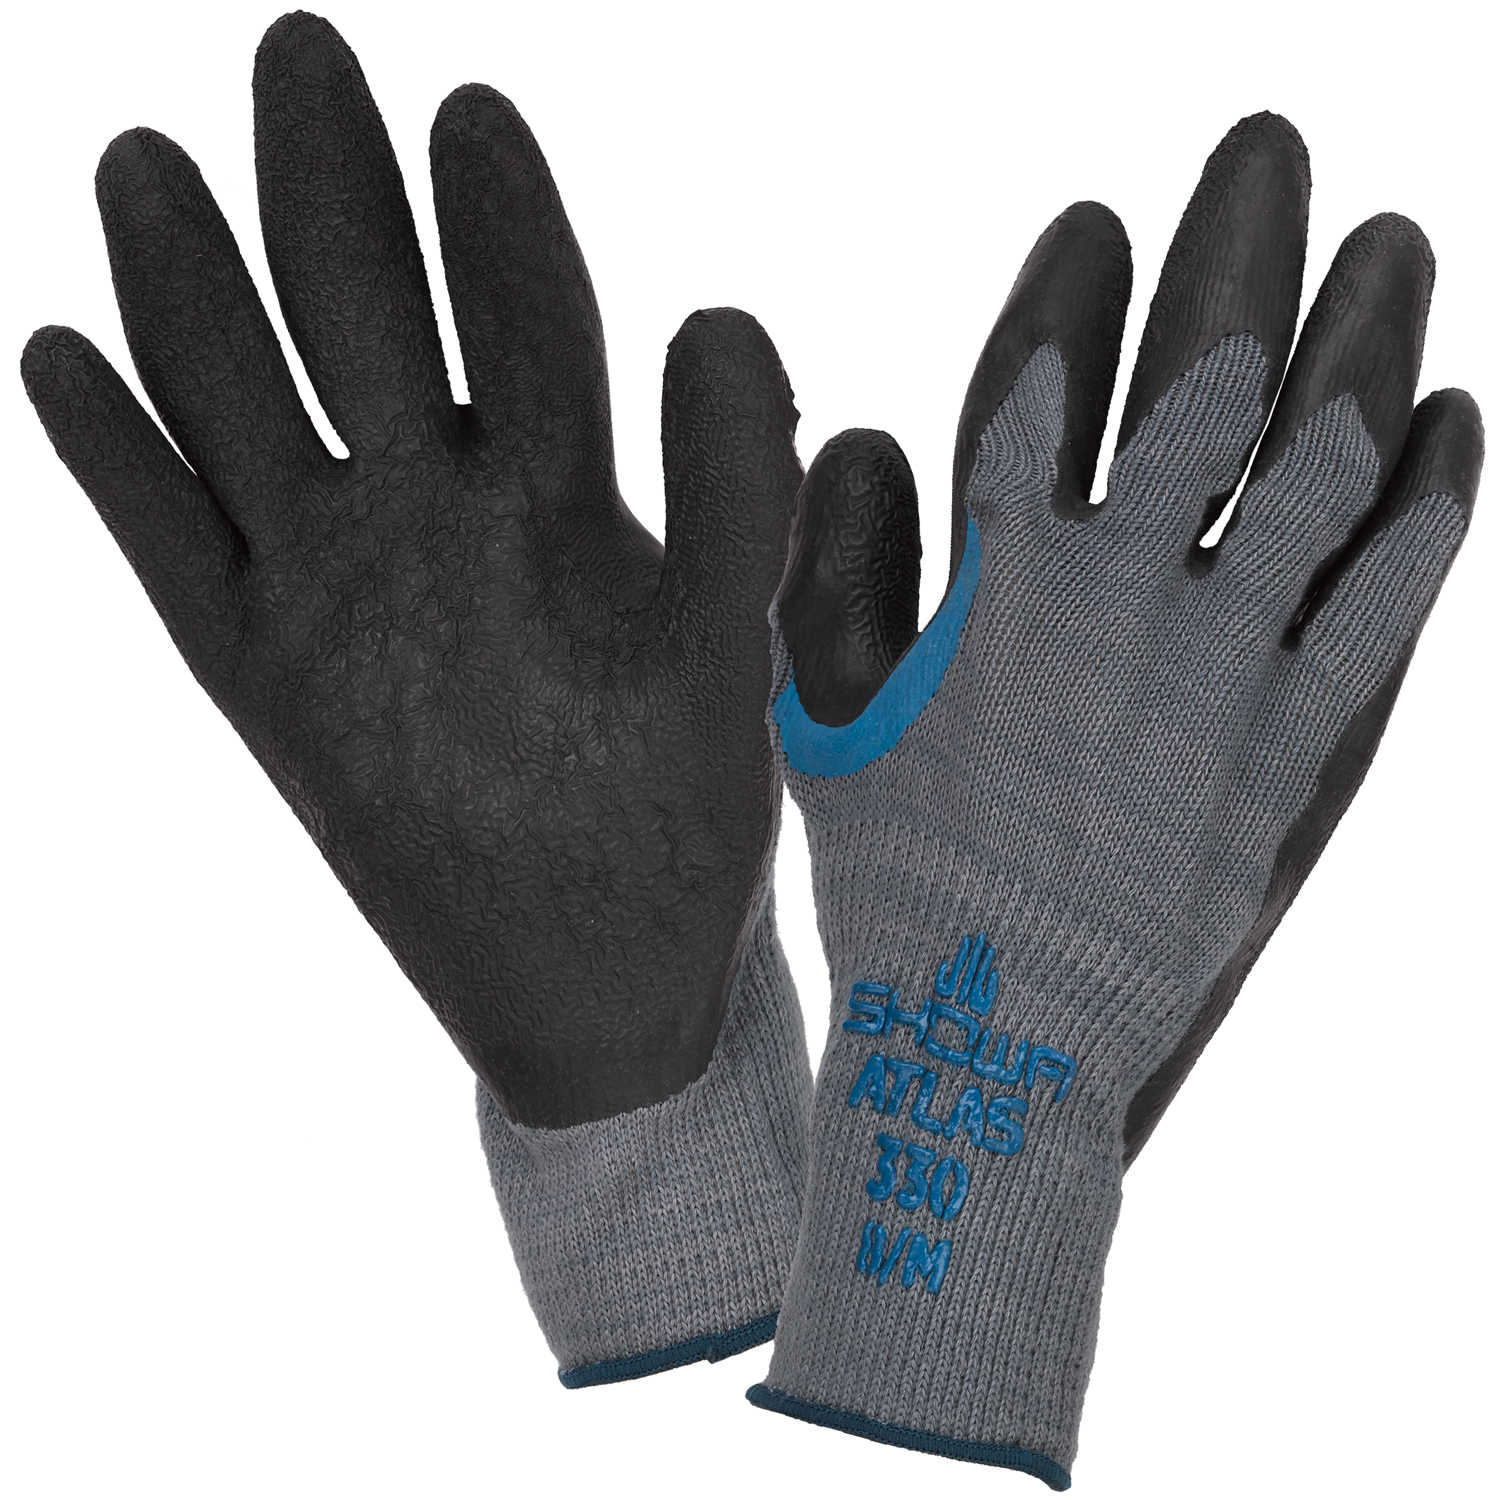 Size 10 XL 1 Pair Showa 330 Re-Grip Safety Gloves 